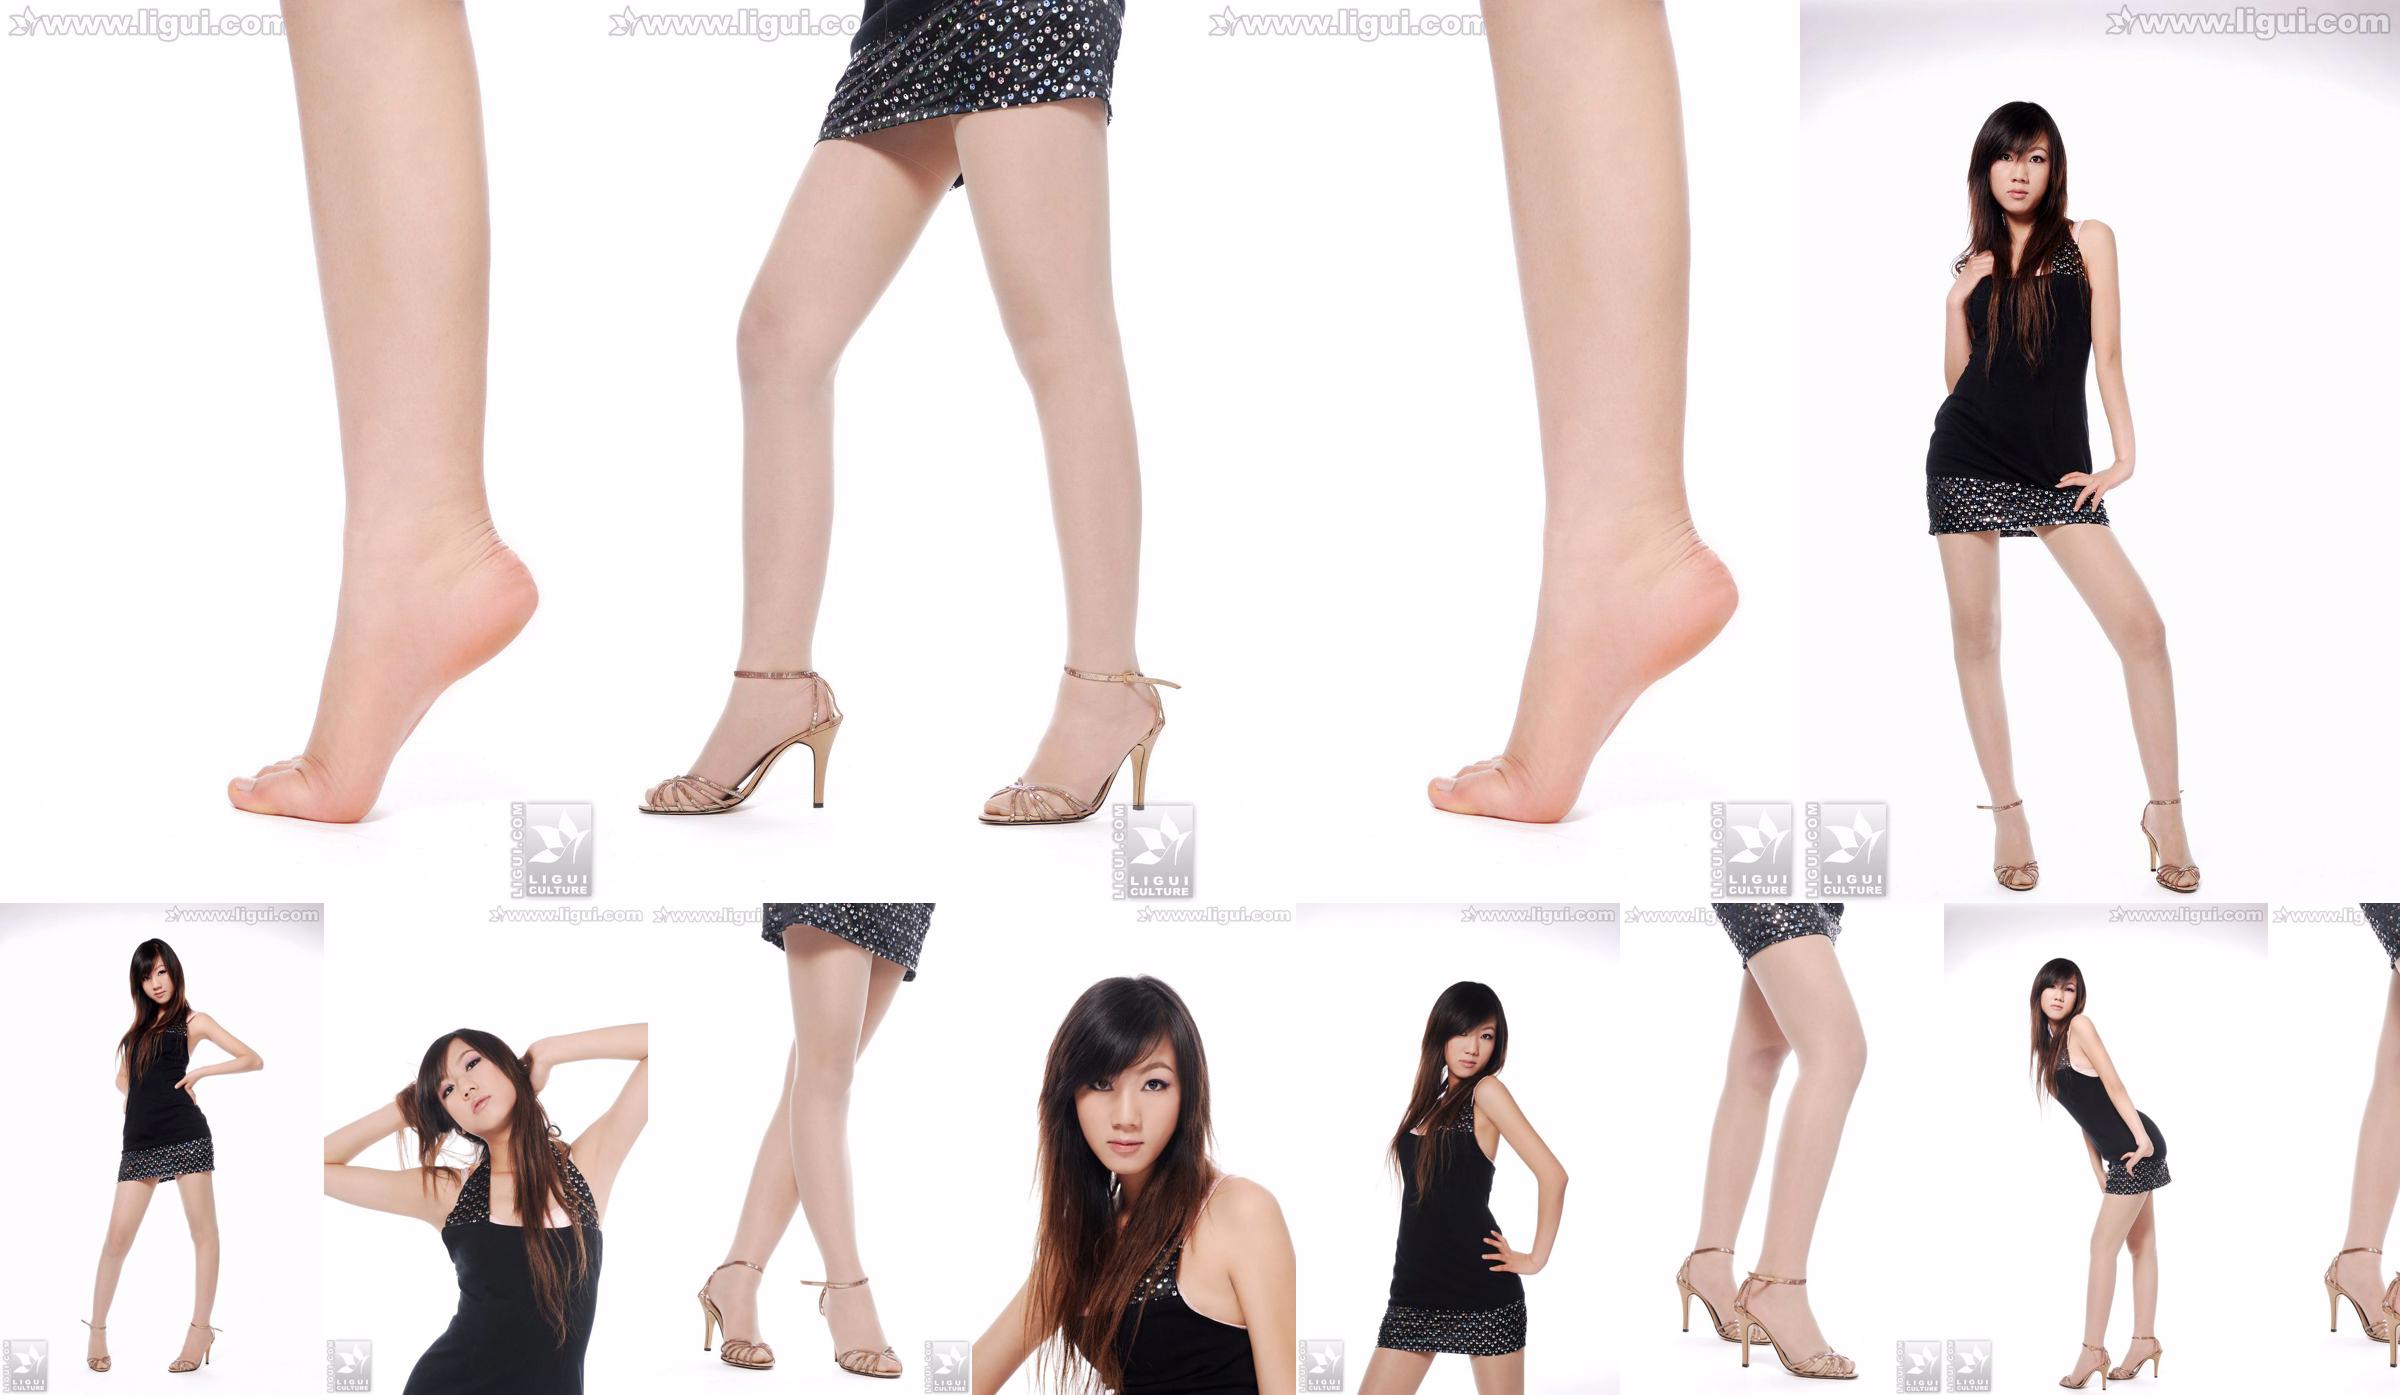 Model Sheng Chao "Hoge hakken Jade Foot Beautiful New Show" [Sheng LiGui] Foto van Beautiful Legs en Jade Foot No.279e1e Pagina 1